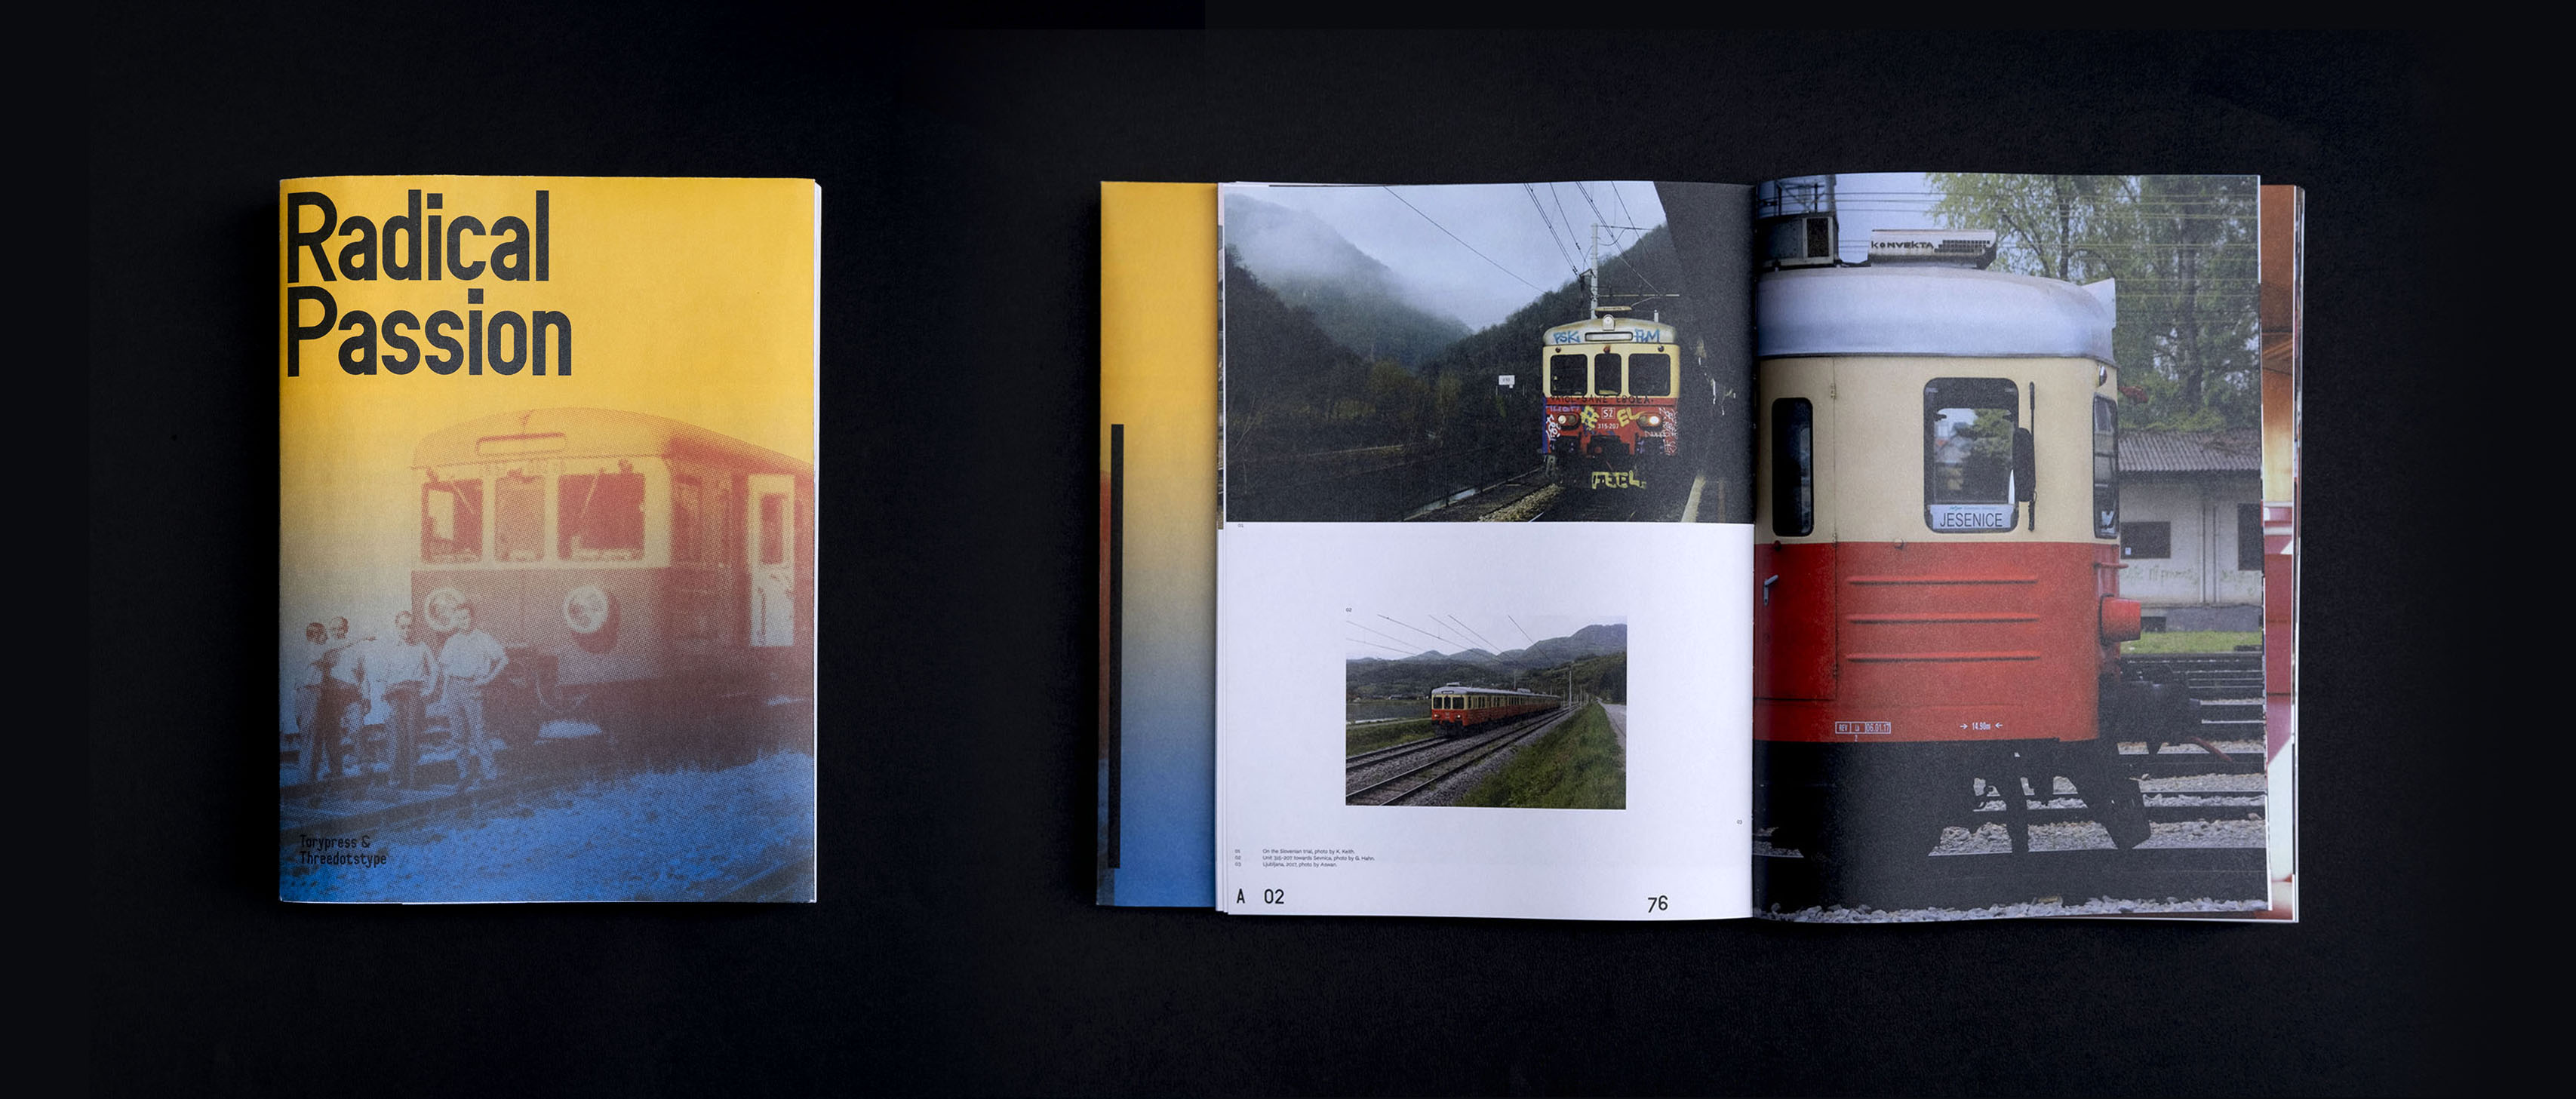 人文學科類首獎《激進的狂熱》，關於火車路線 EN57 的探訪紀錄，作者花了4年時間搭乘在全國各地旅行，採訪熱情的塗鴉作家、模型製作者、攝影師、畫家和火車司機，500 多頁的視覺故事，揭開這條鐵路的設計、視覺文化、愛好者，還有對社會的影響＿攝影：Circle / 王蓓恩